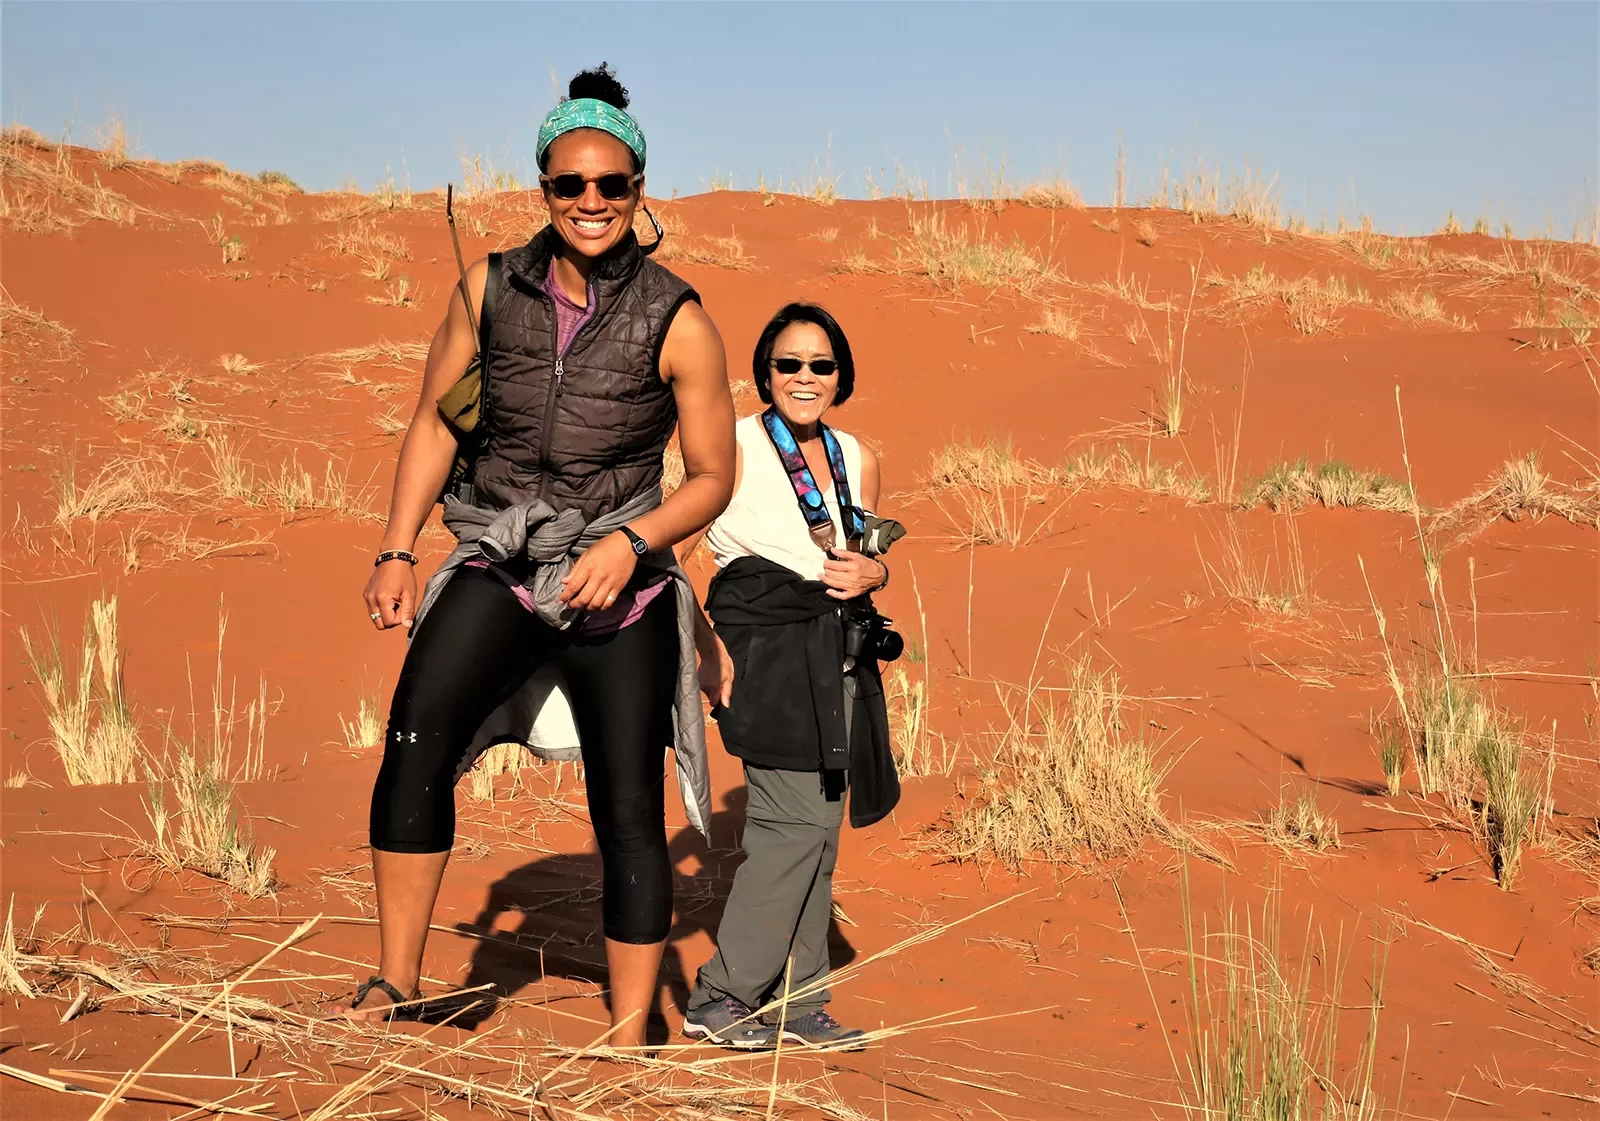 2 women standing in the dunes of Africa